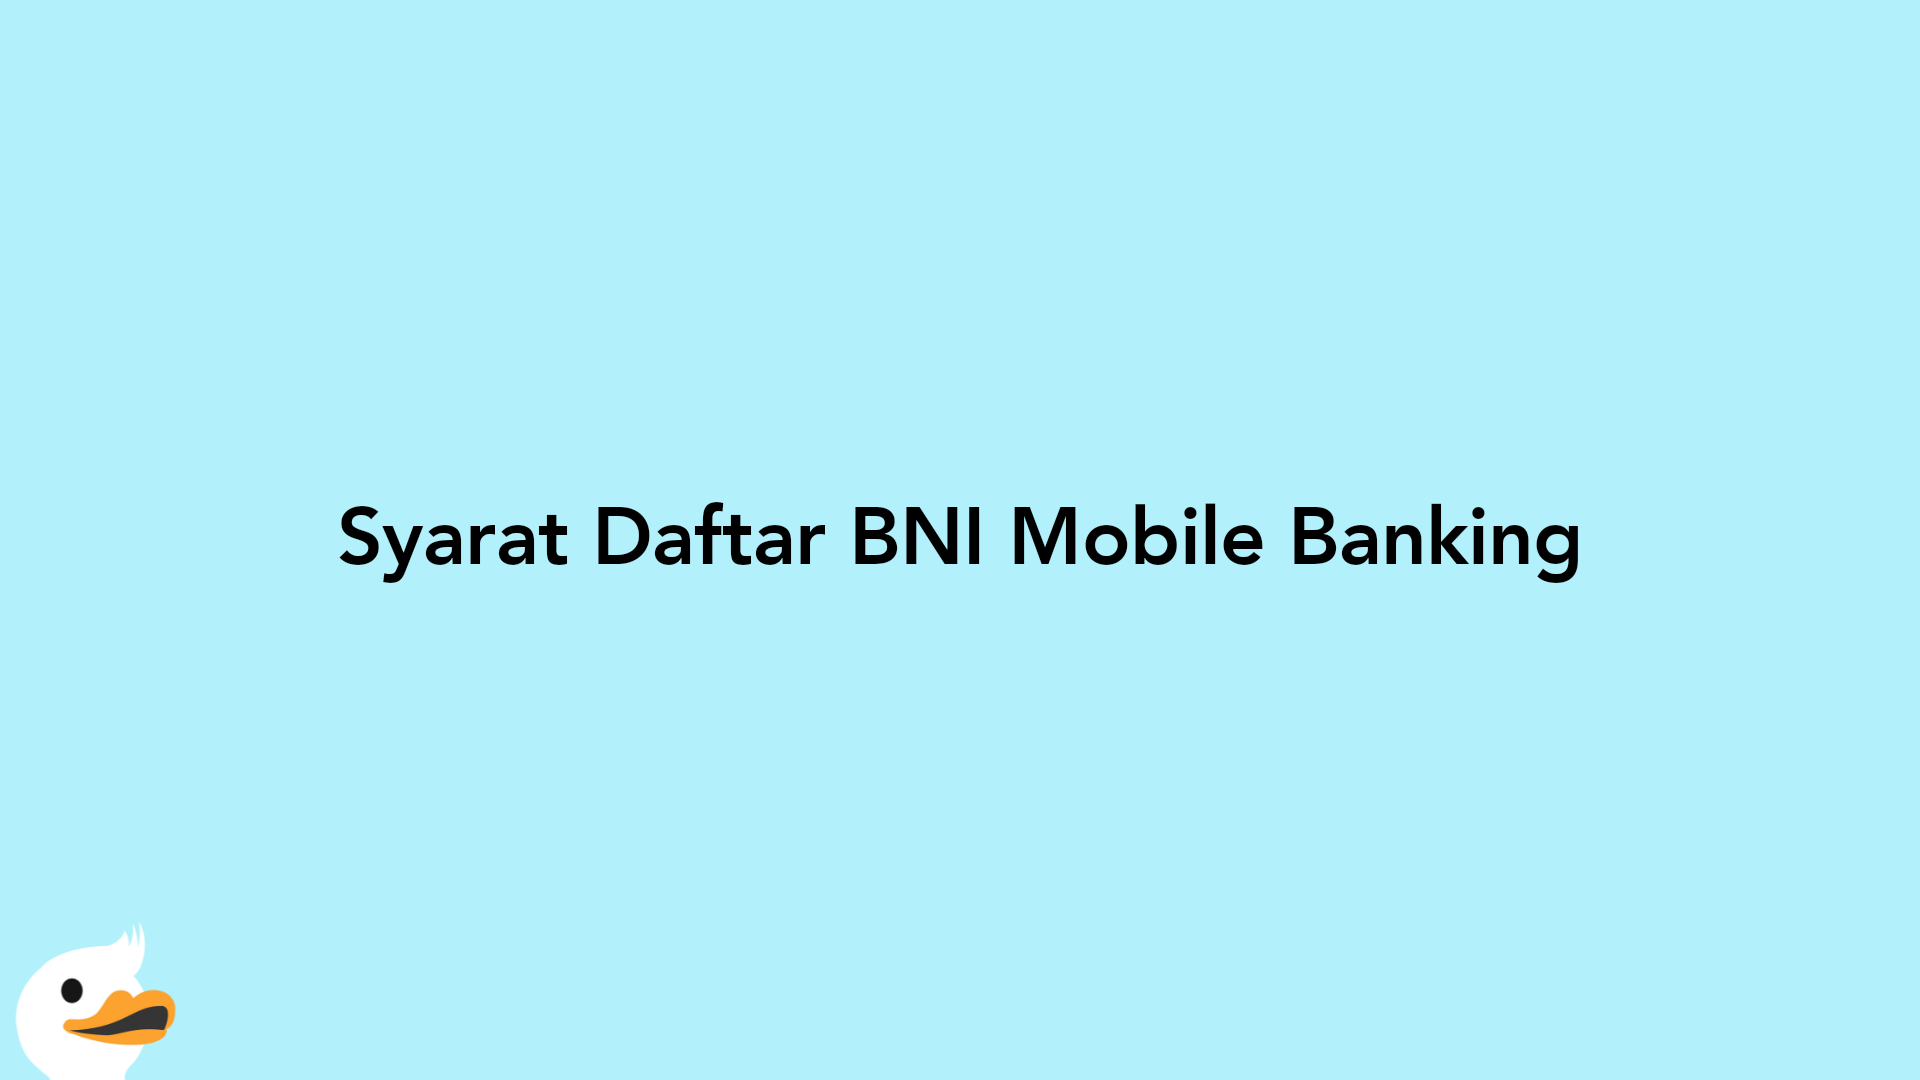 Syarat Daftar BNI Mobile Banking